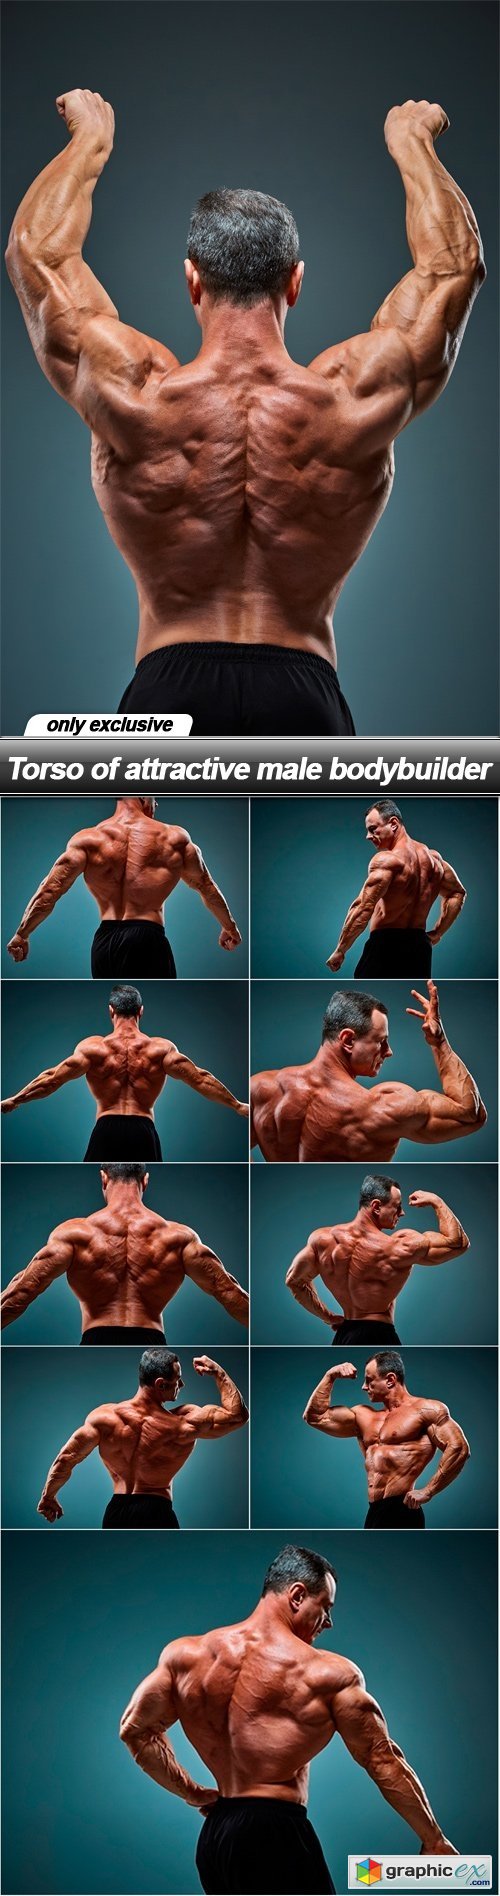 Torso of attractive male bodybuilder - 10 UHQ JPEG